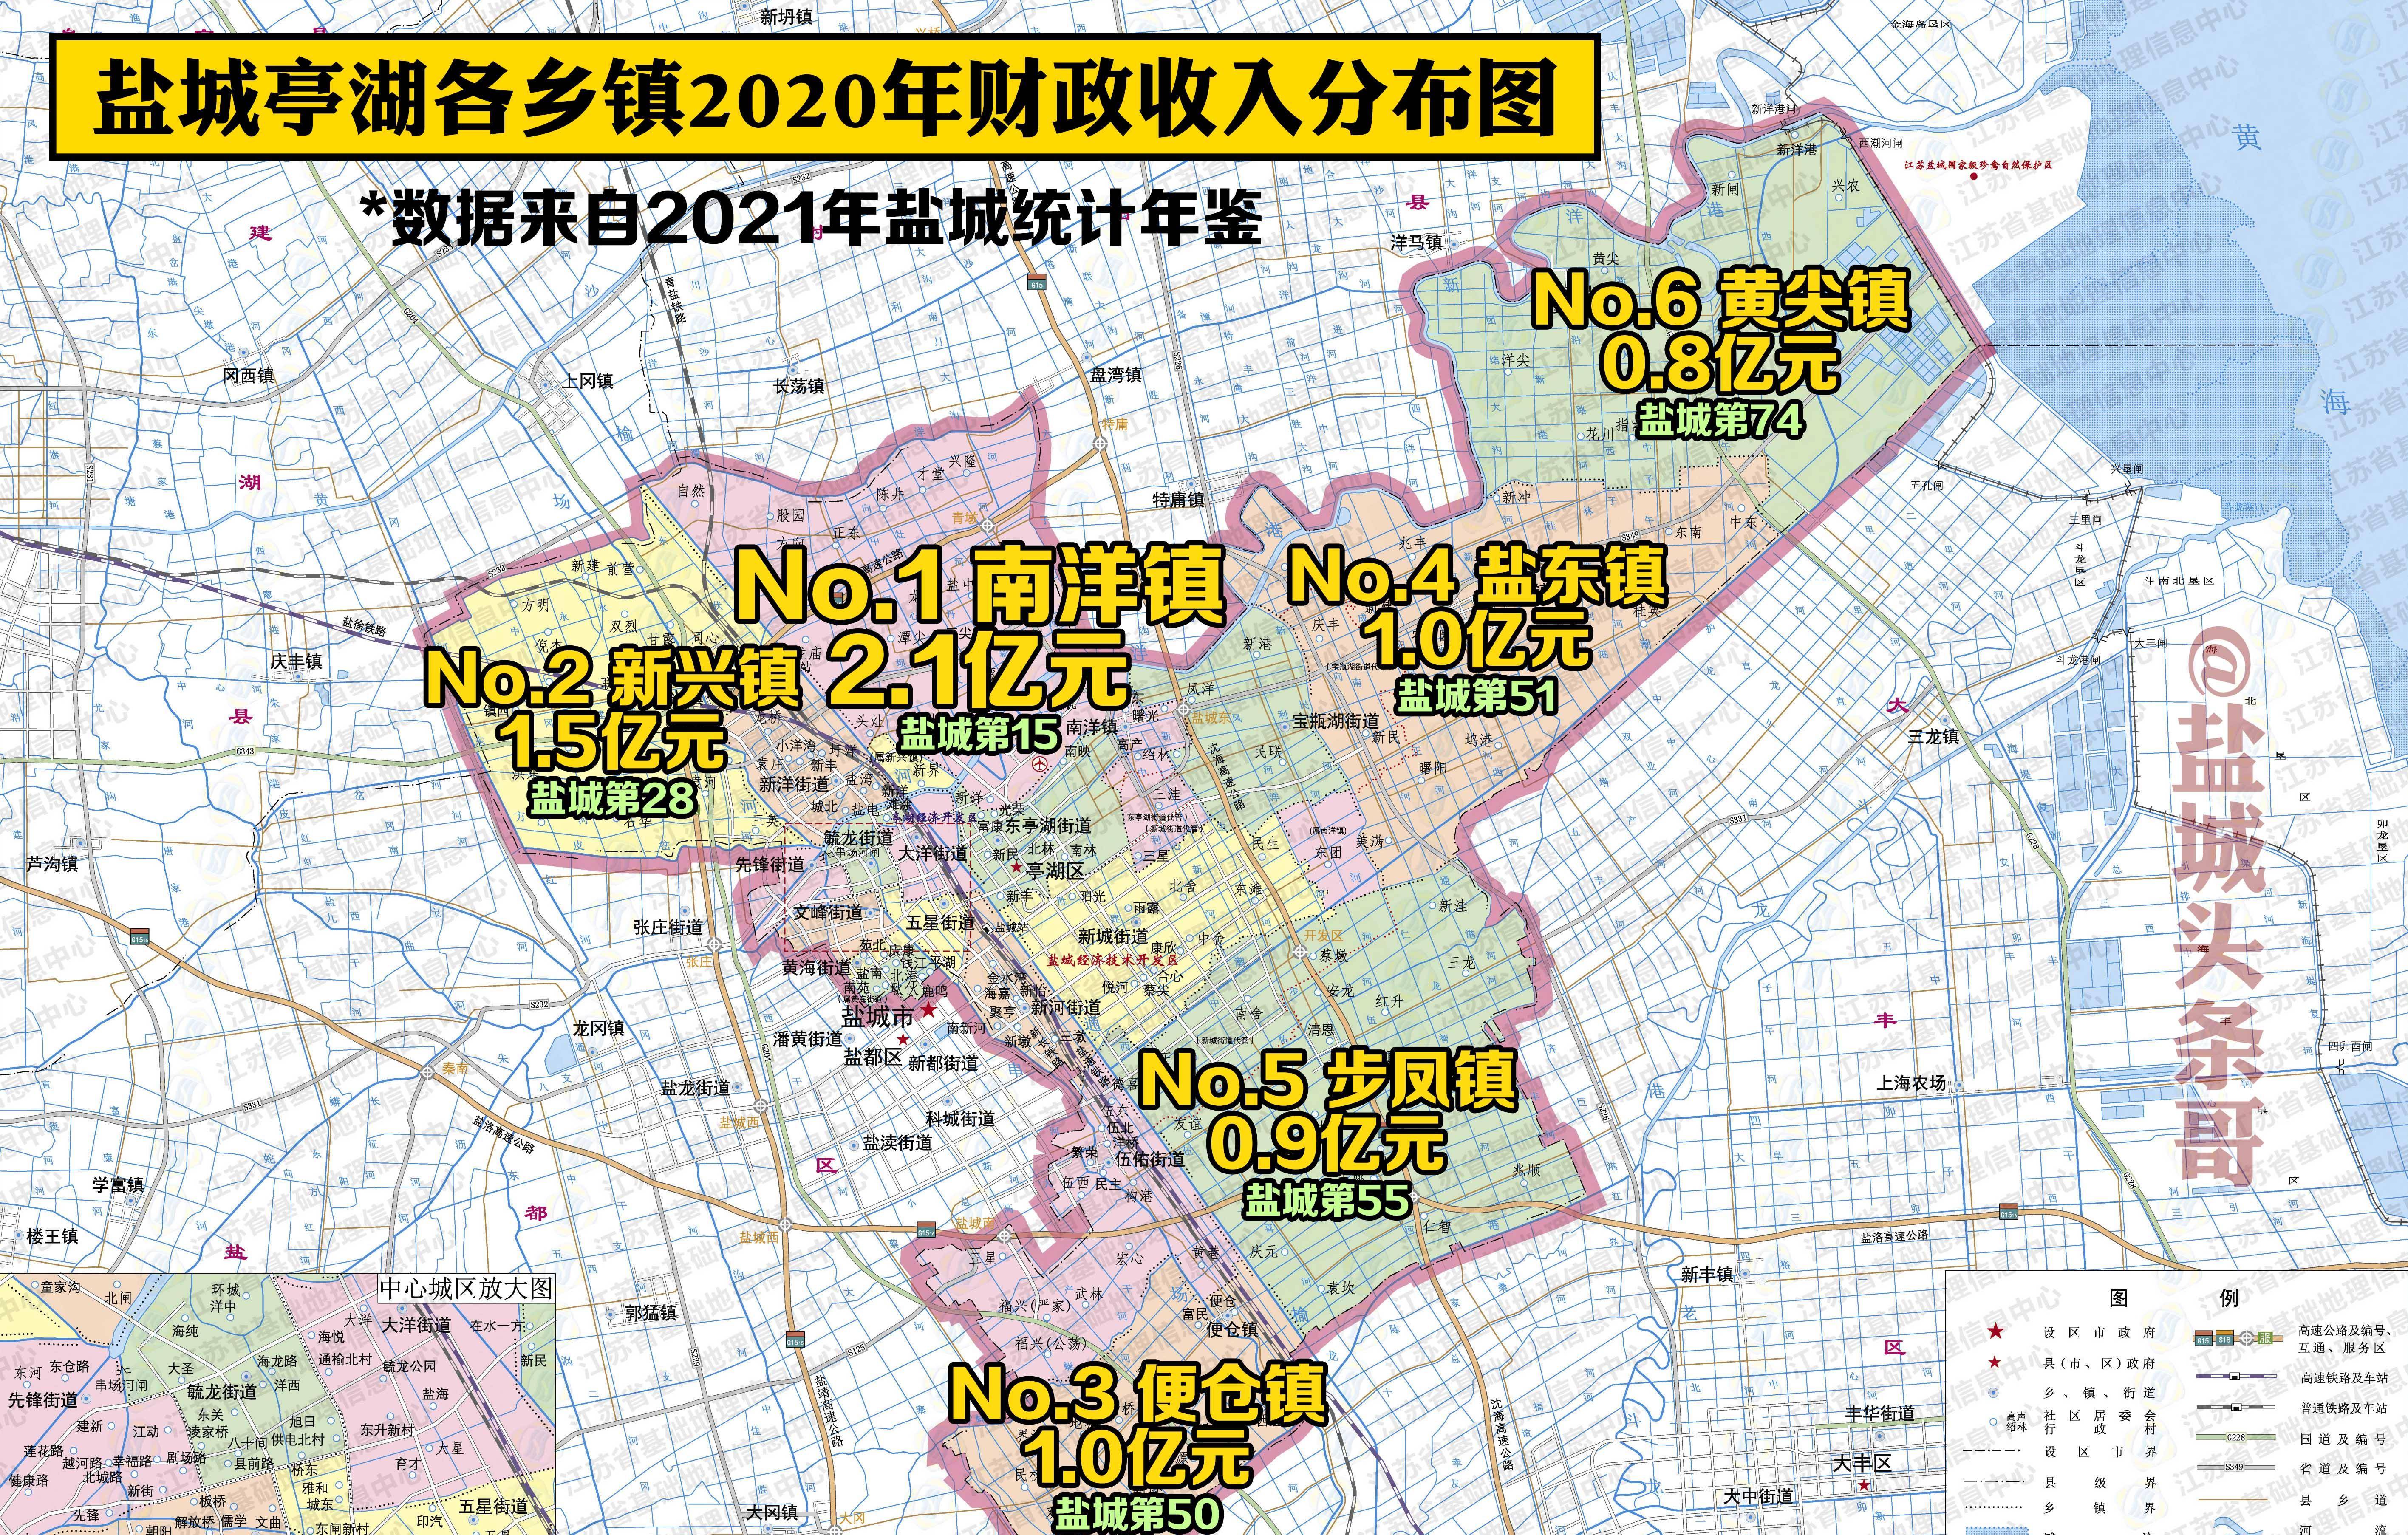 步凤镇地图图片